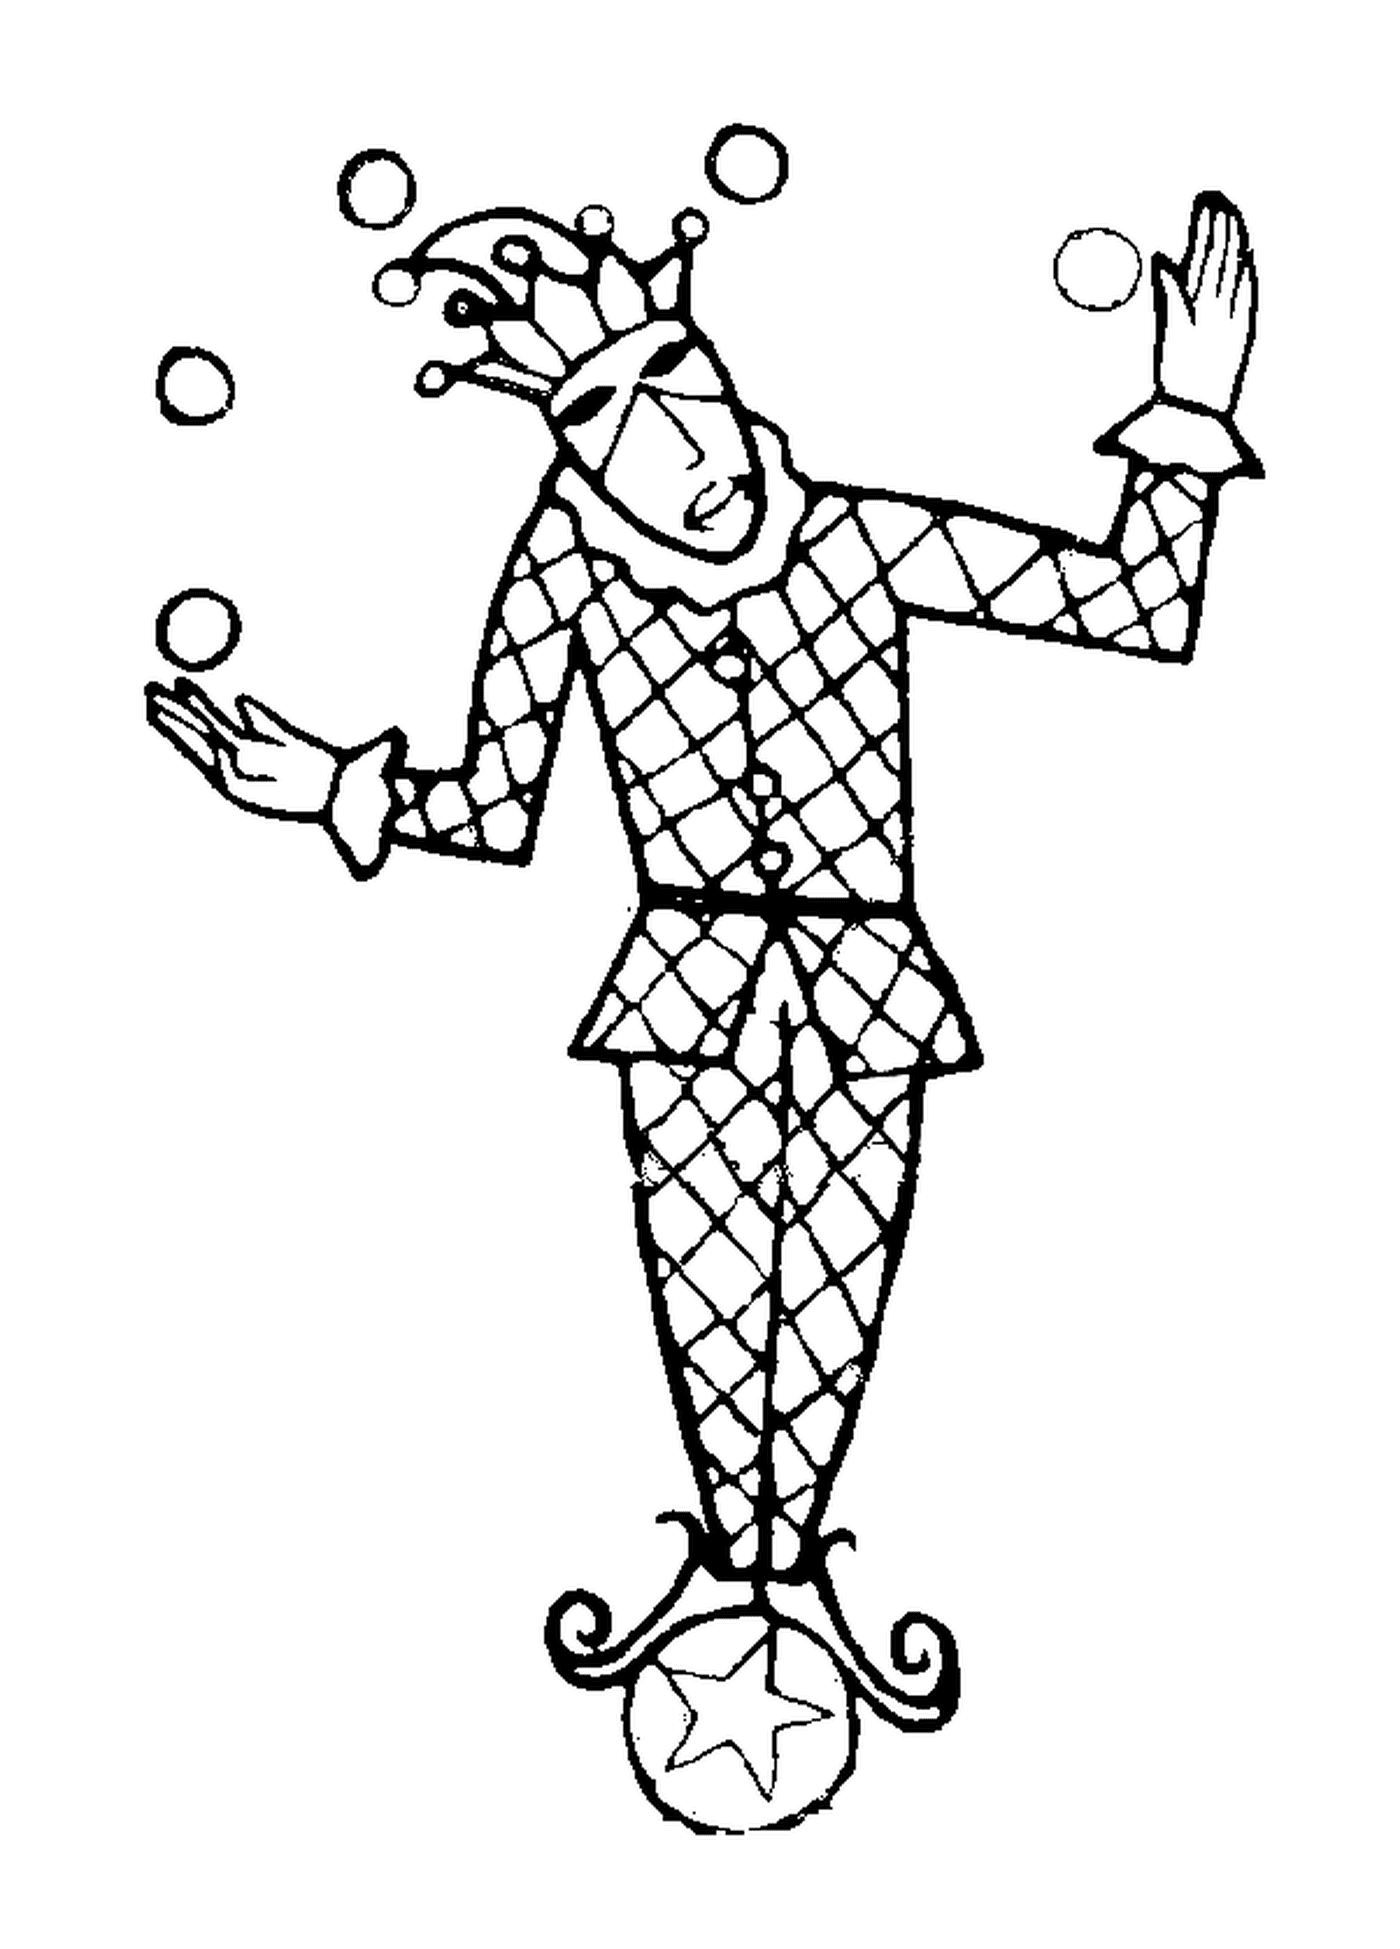   Arlequin jonglant avec des balles au carnaval 